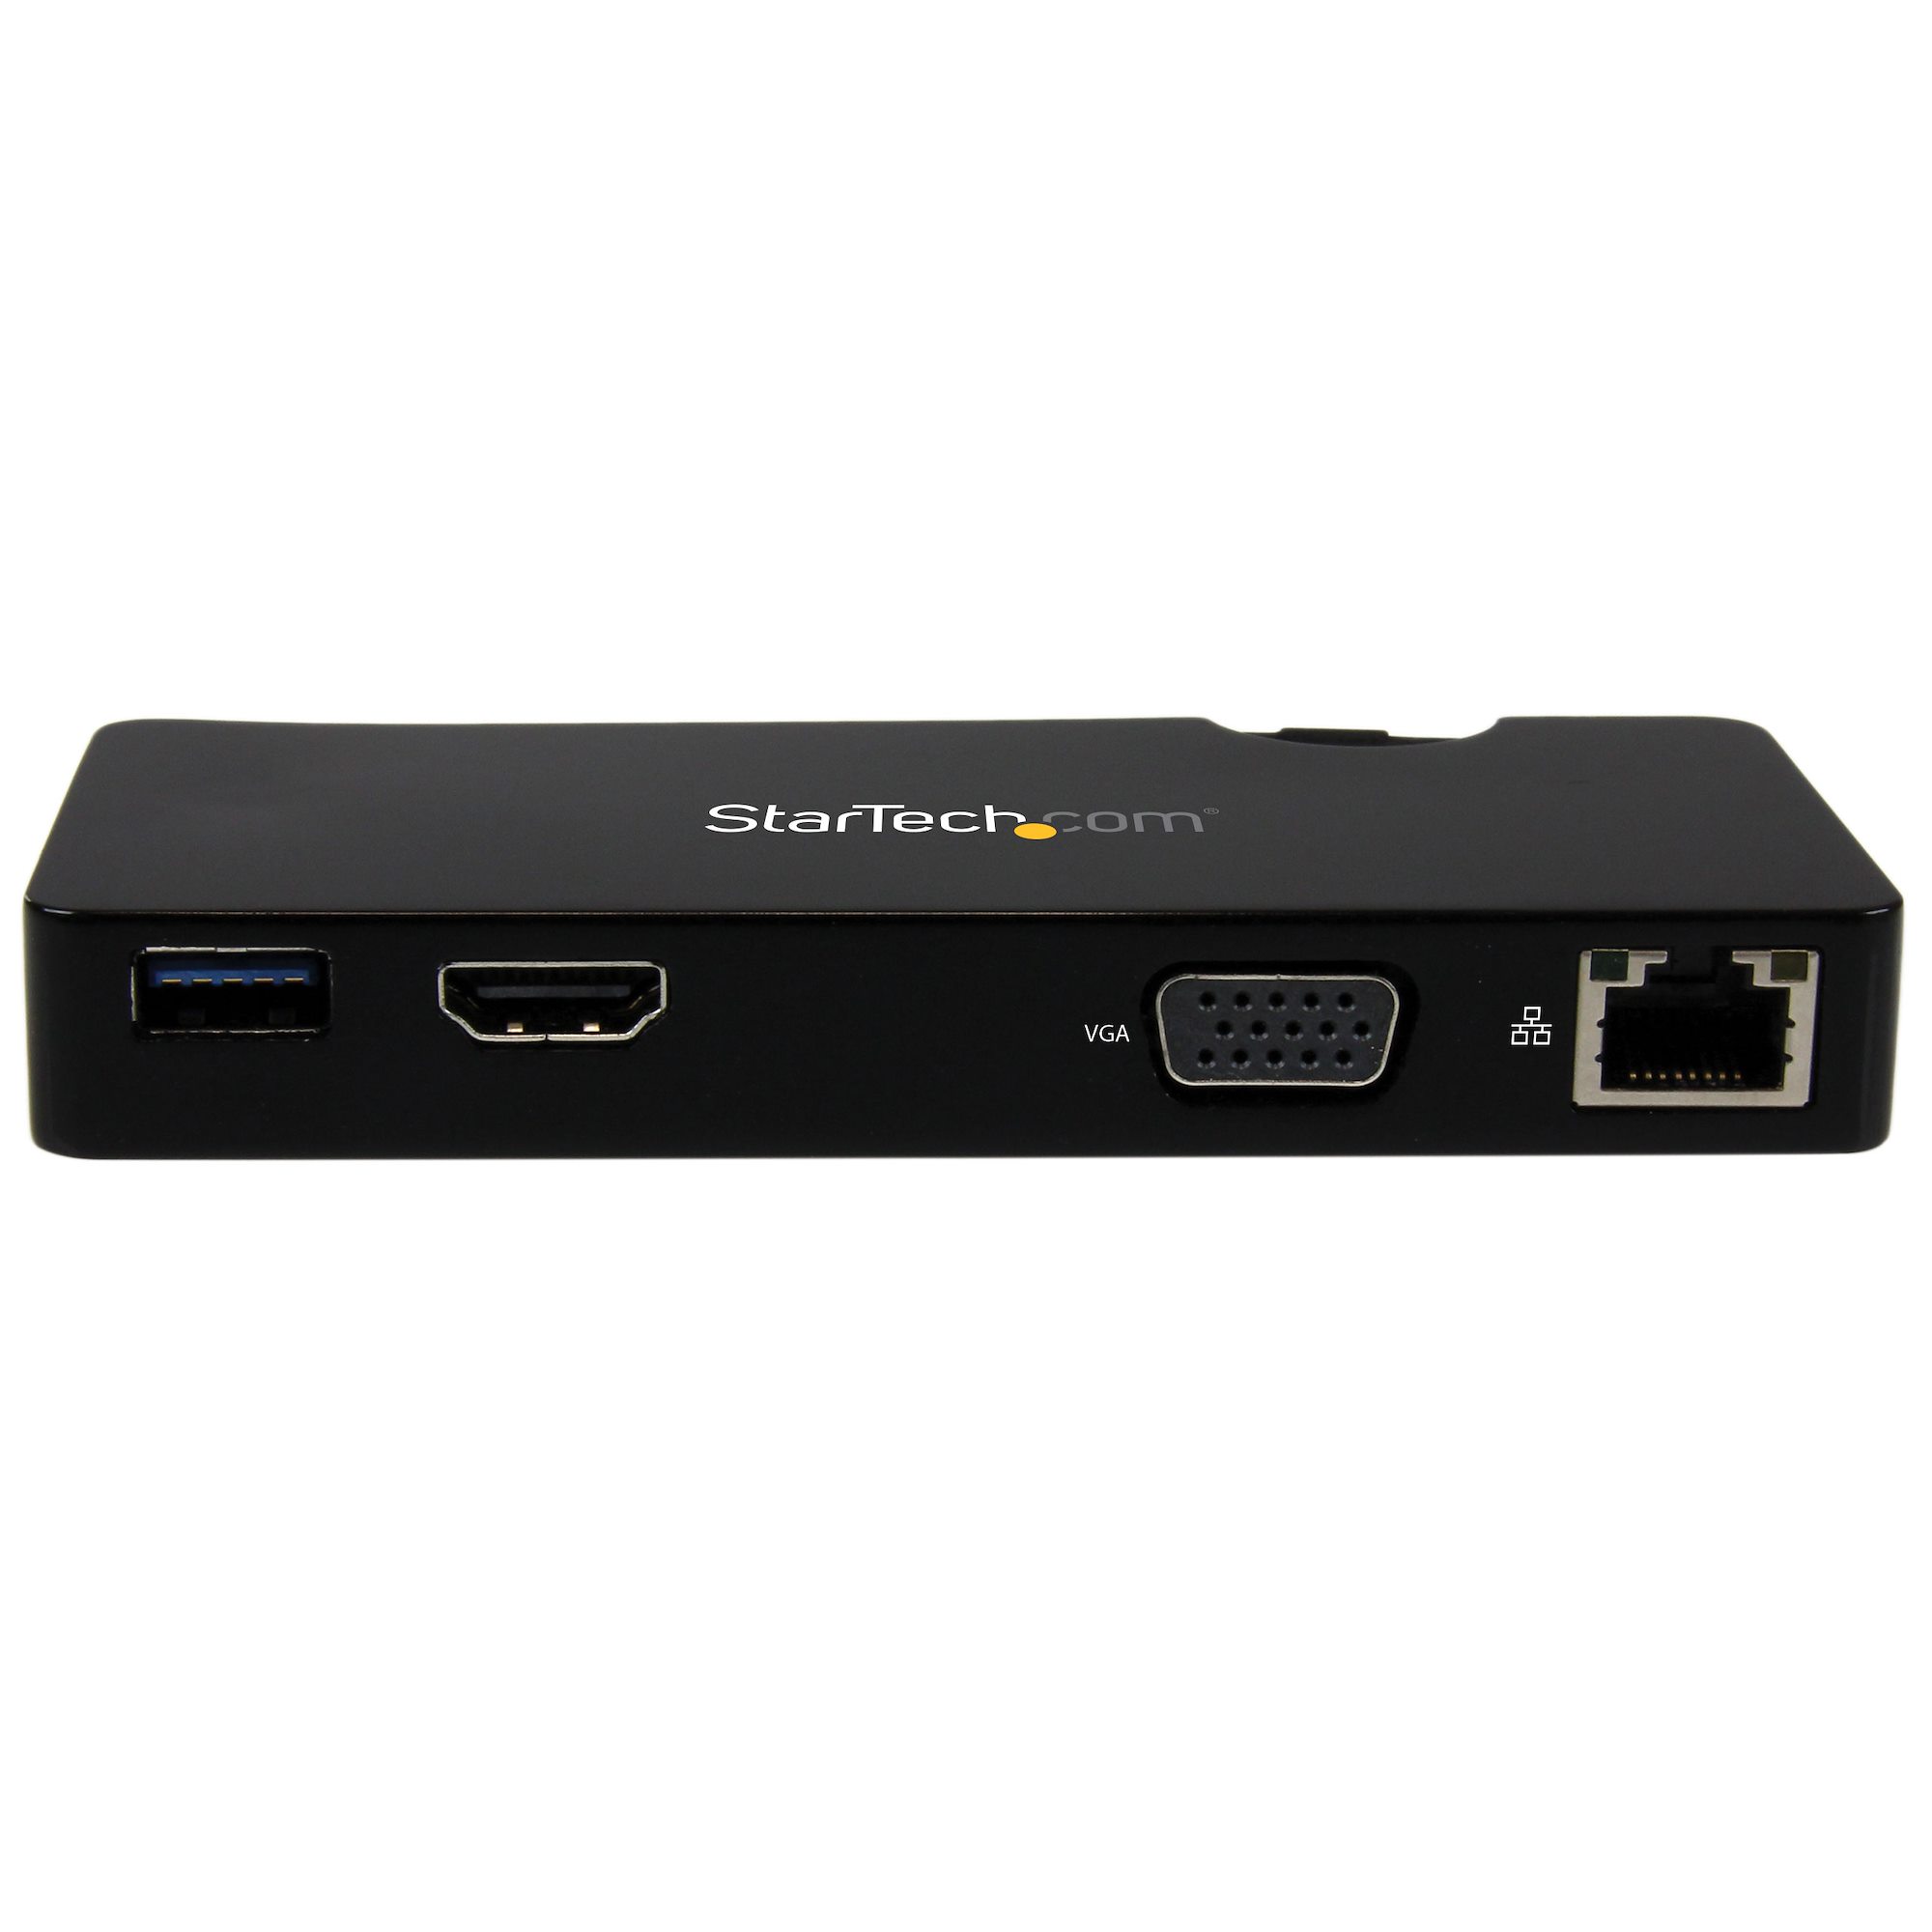 HDMI or StarTech USB3SMDOCKHV StarTech.com Travel Docking Station for Laptops 